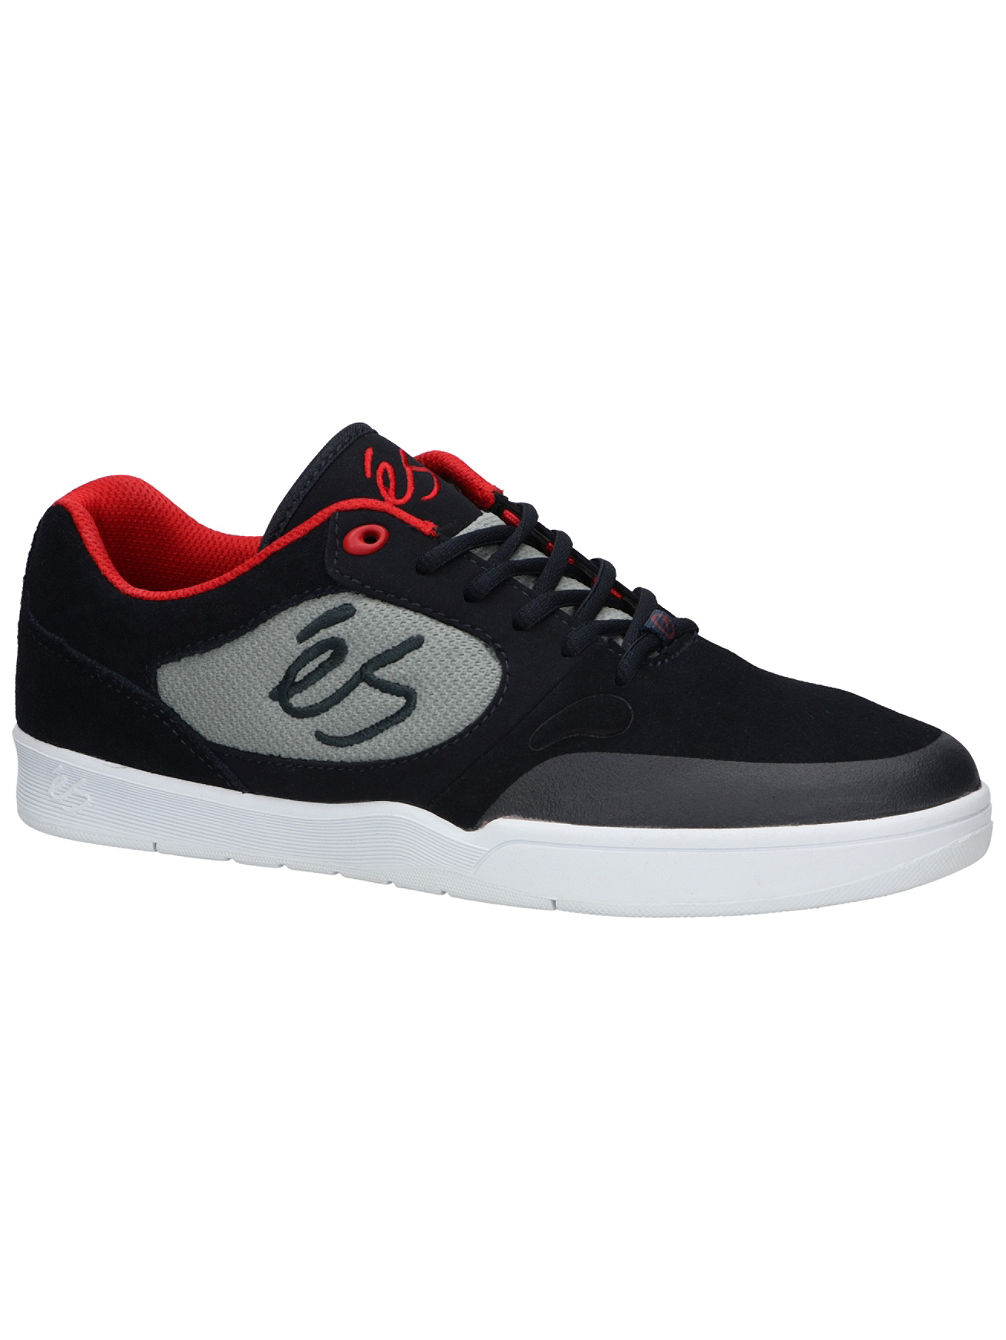 Swift 1.5 Chaussures de Skate